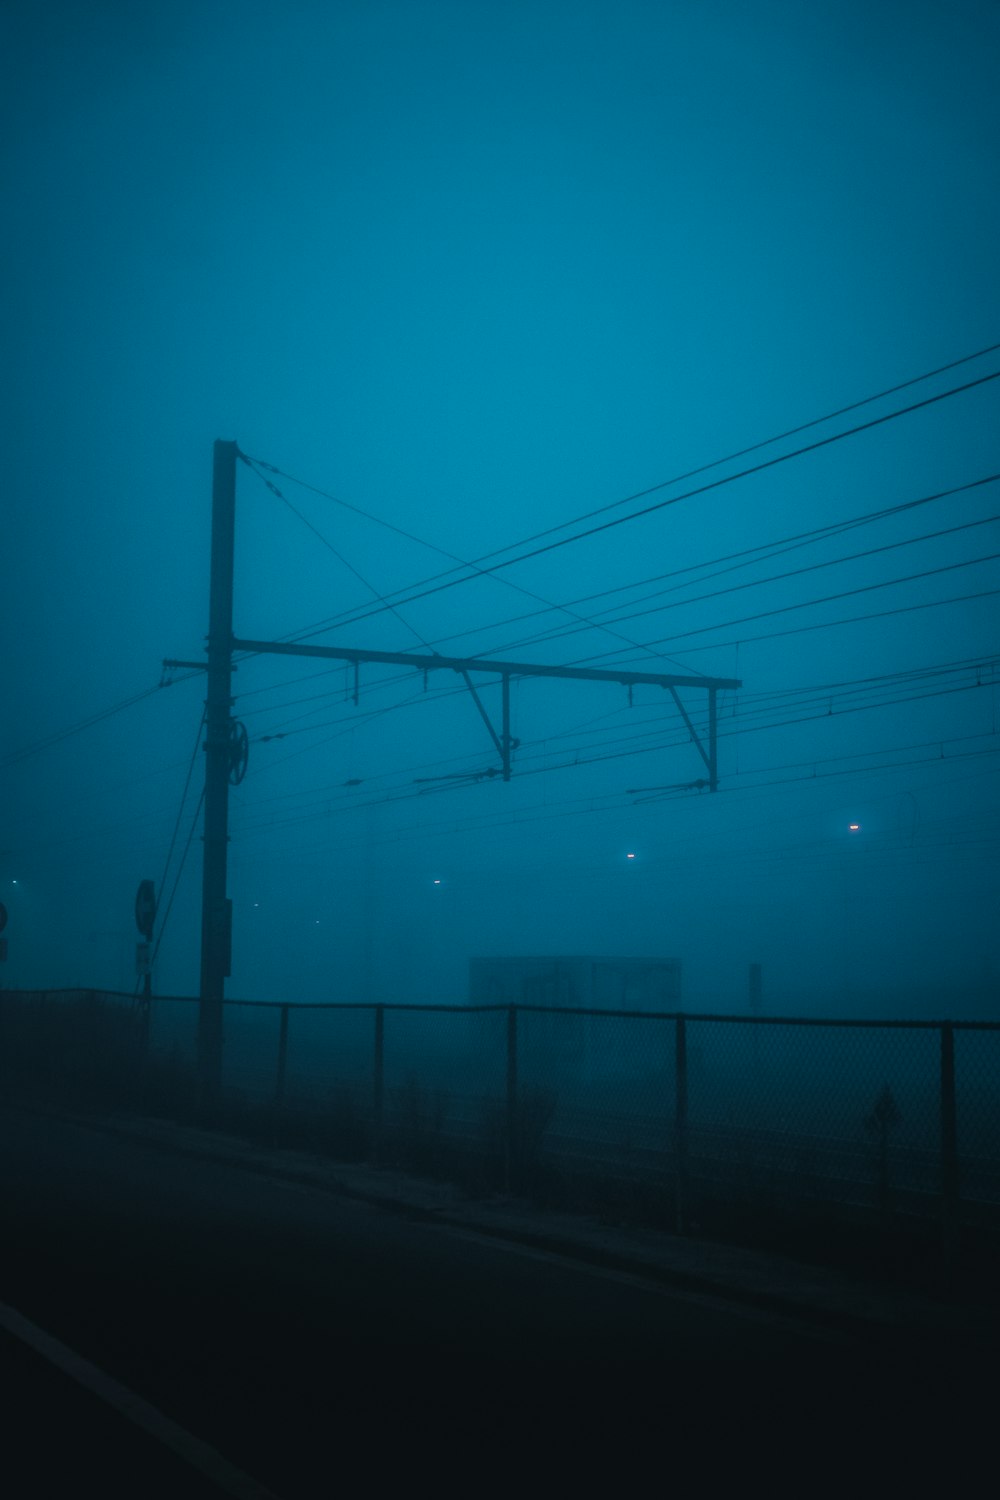 Una strada nebbiosa con linee elettriche in lontananza